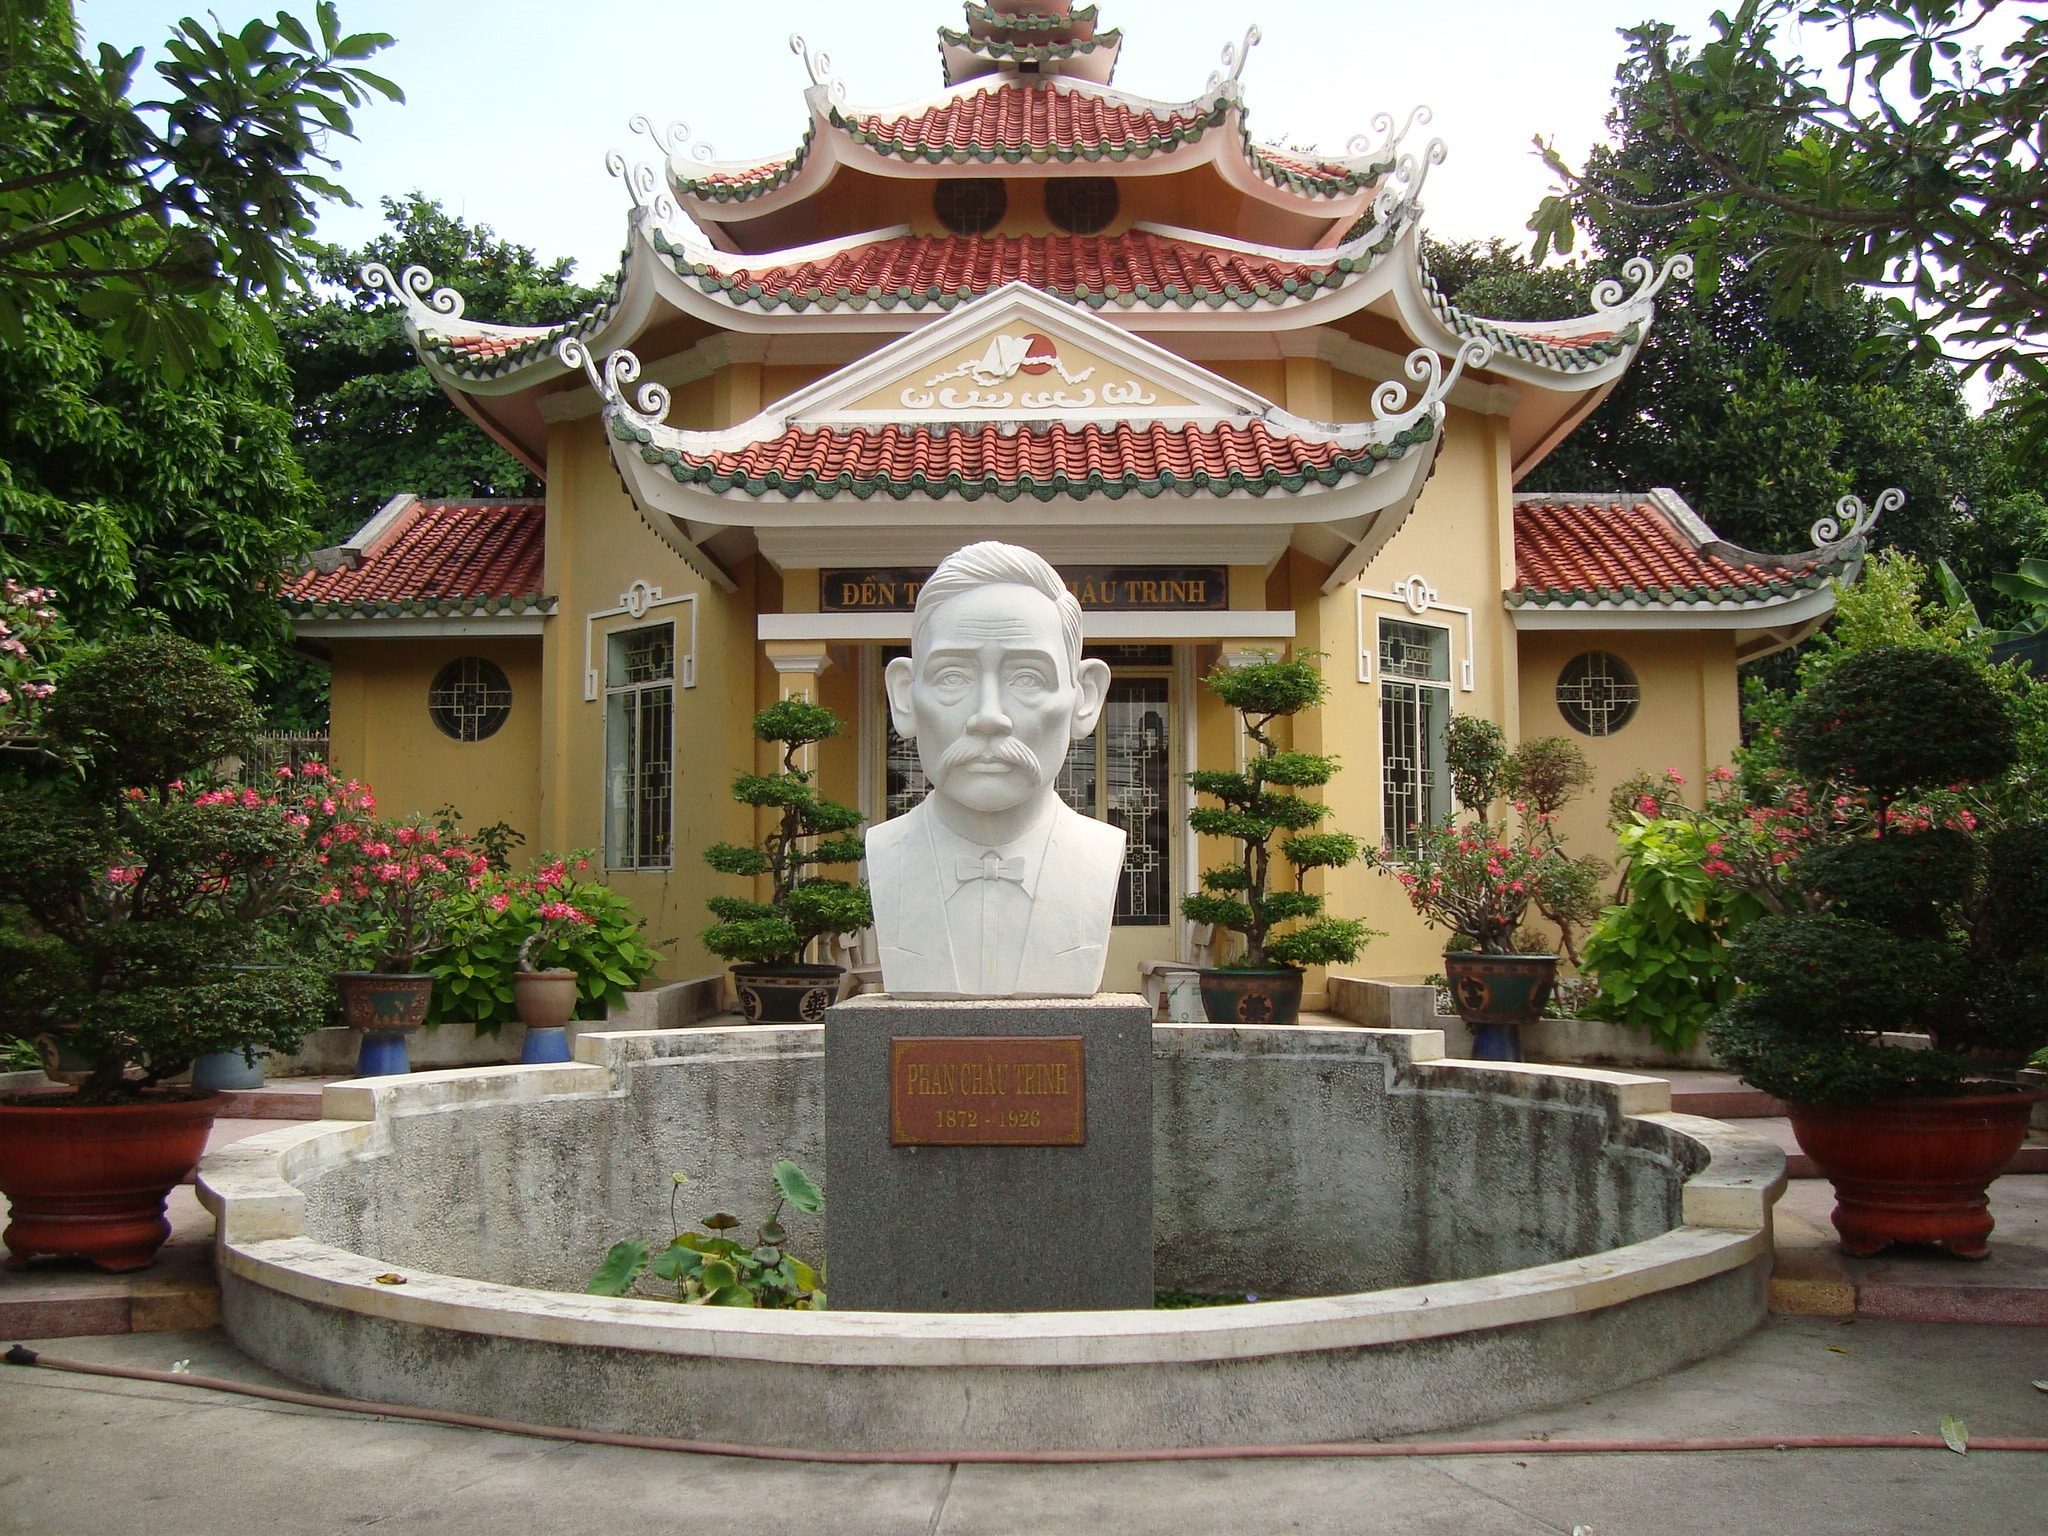 Mộ cụ Phân Chu Trinh - di tích lịch sử quận tân bình